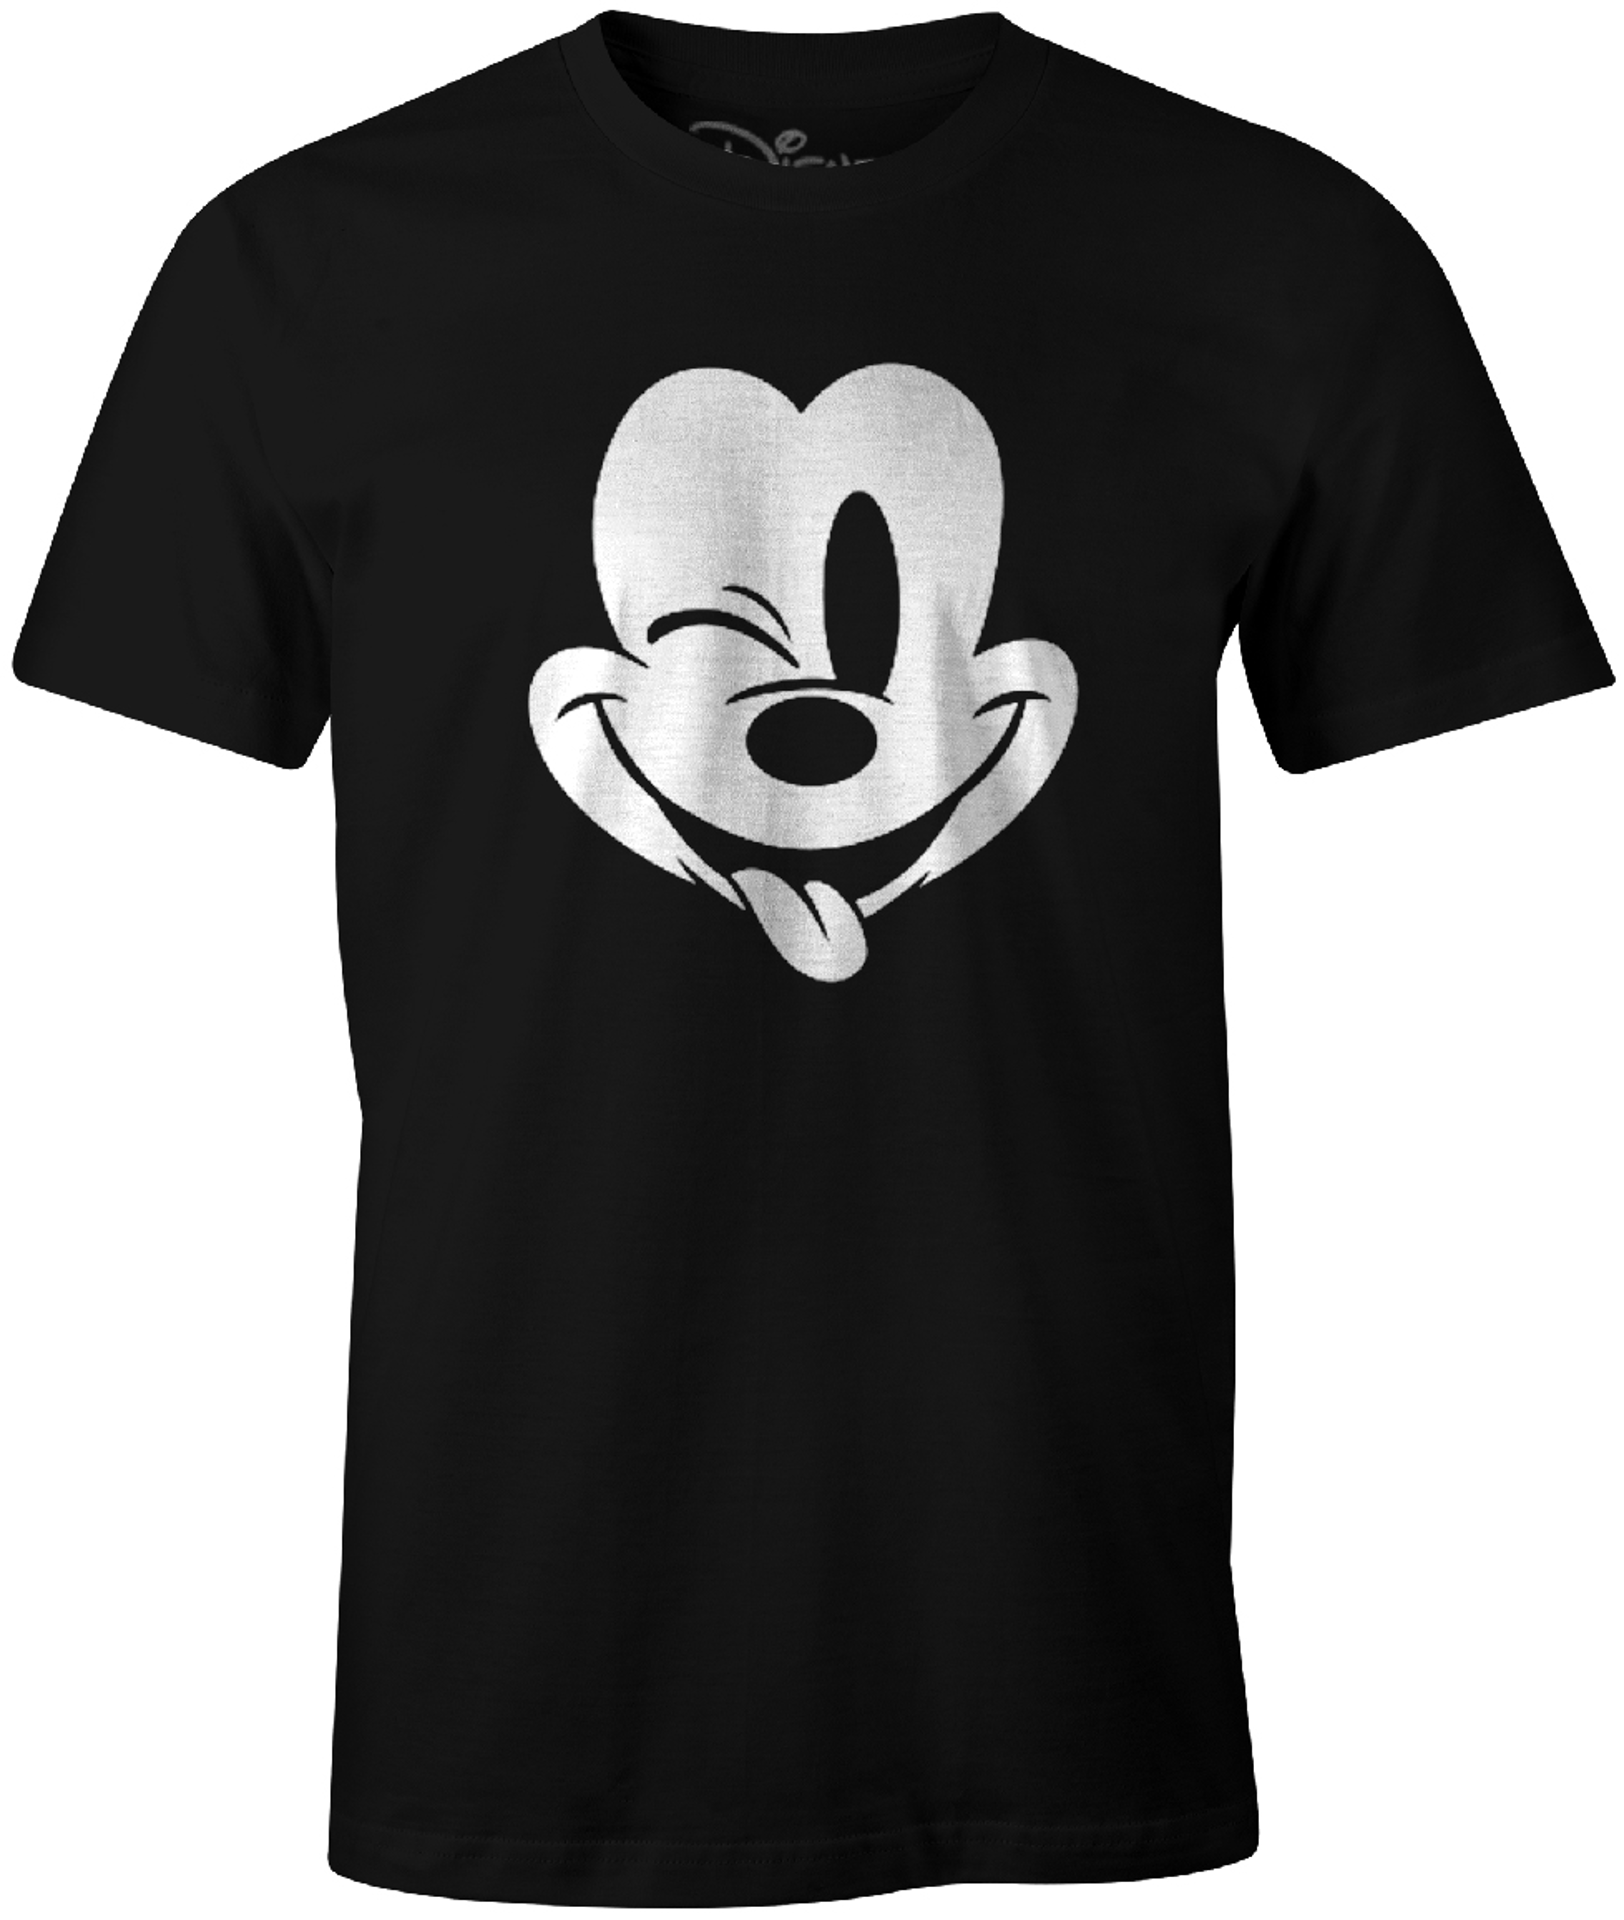 Disney - T-Shirt Noir Mickey Mouse faisant un clin d'oeil - L